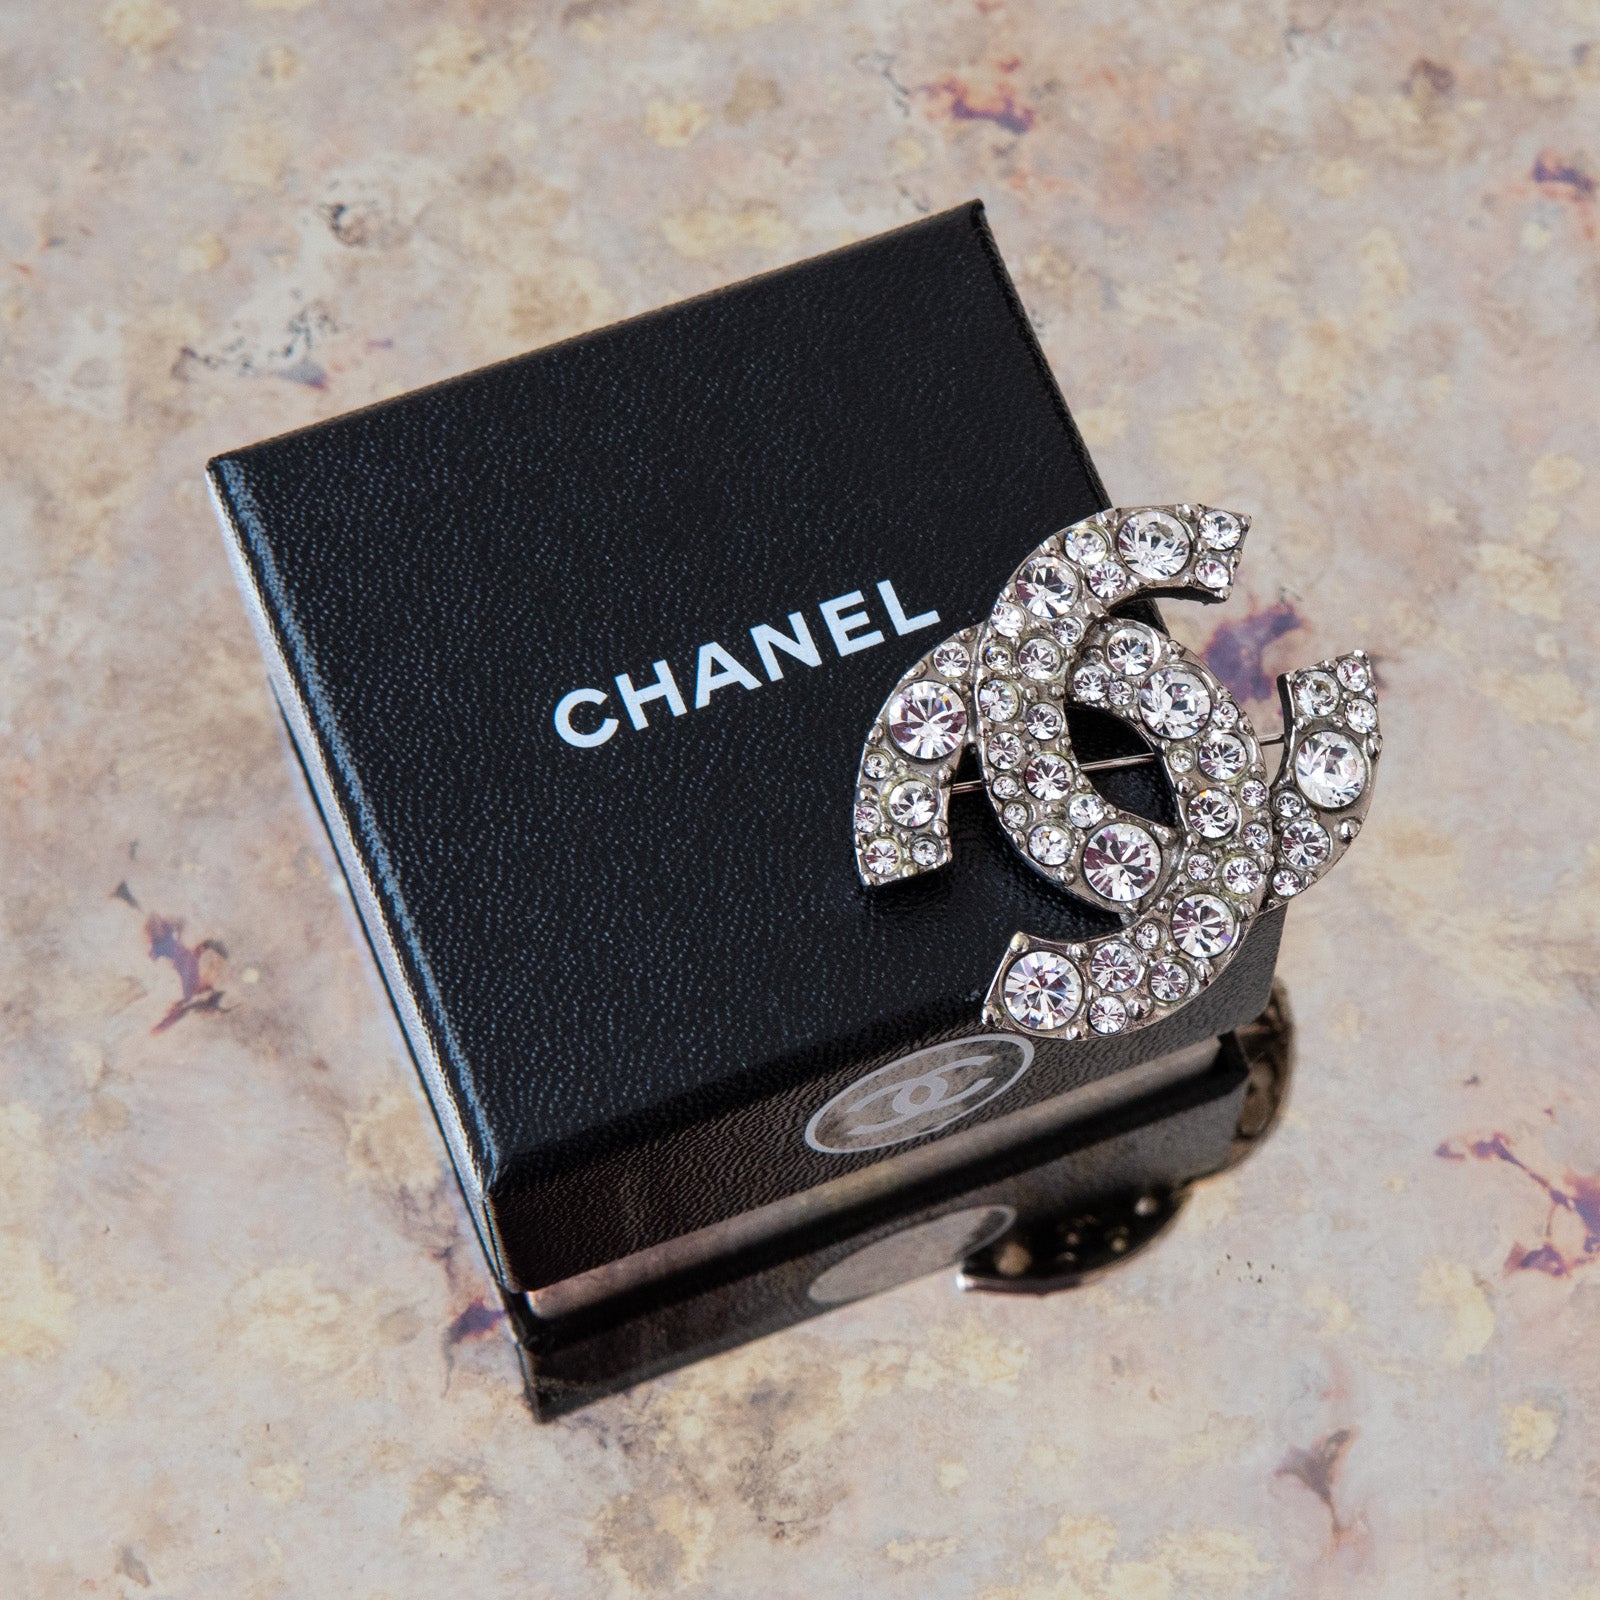 Chanel Diamante Brooch - Image 4 of 6